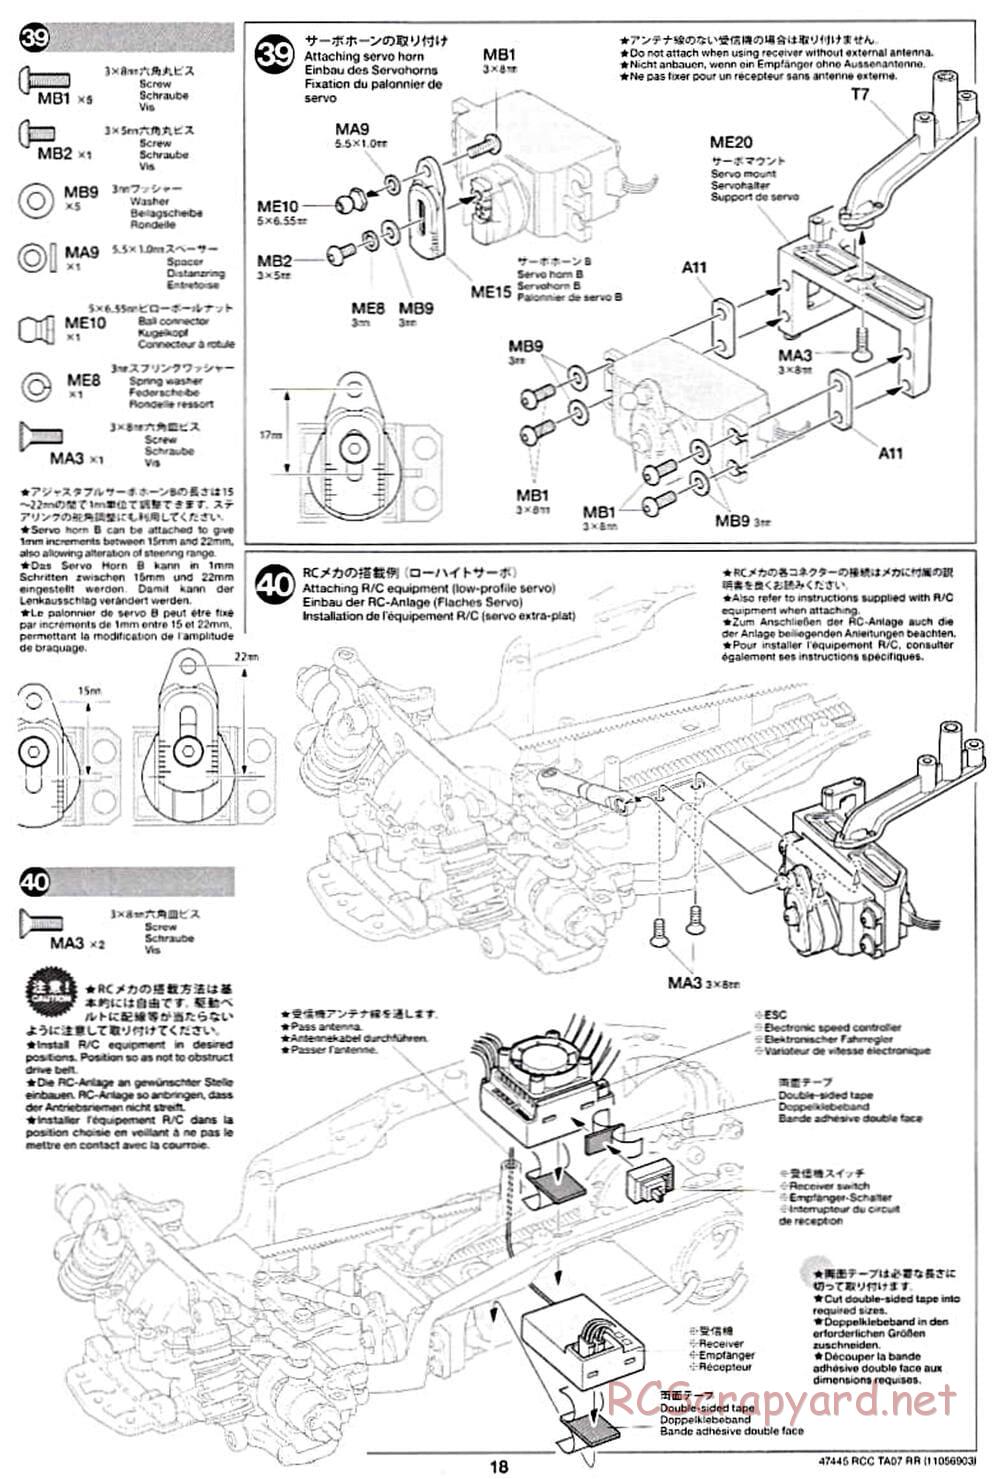 Tamiya - TA07 RR Chassis - Manual - Page 18